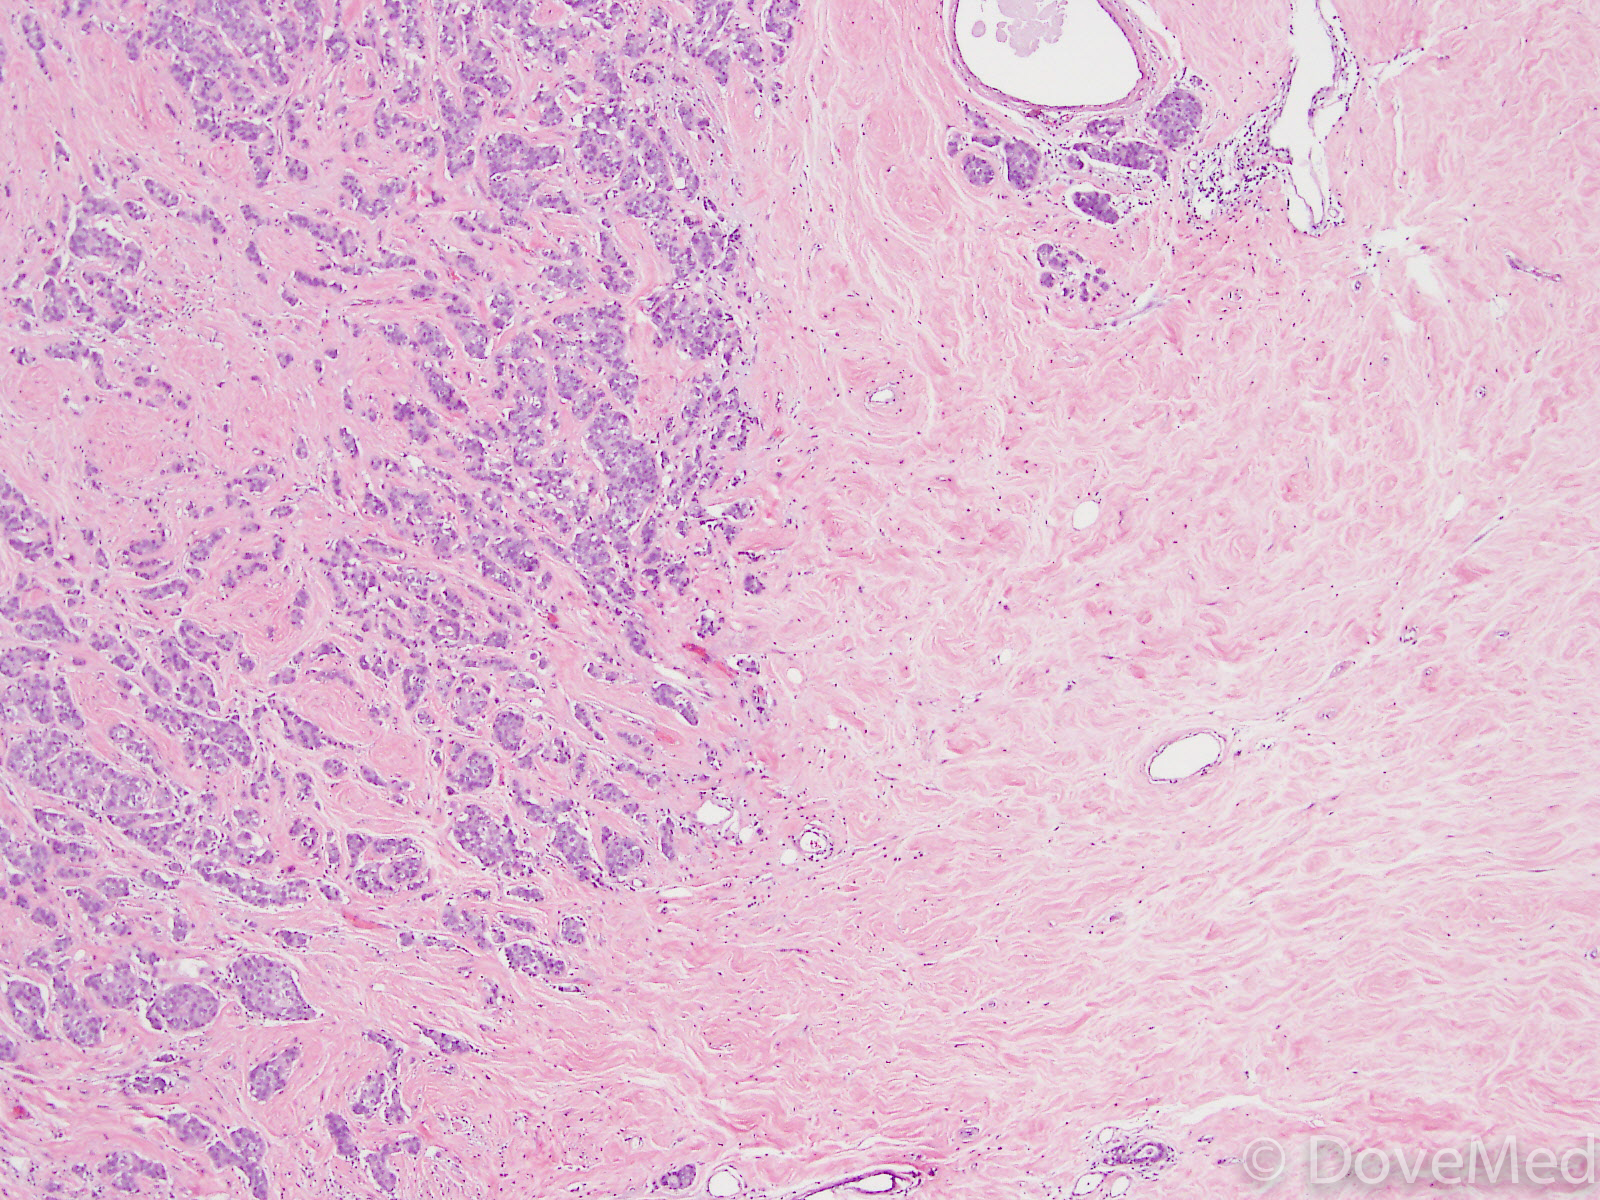 Invasive anal carcinoma